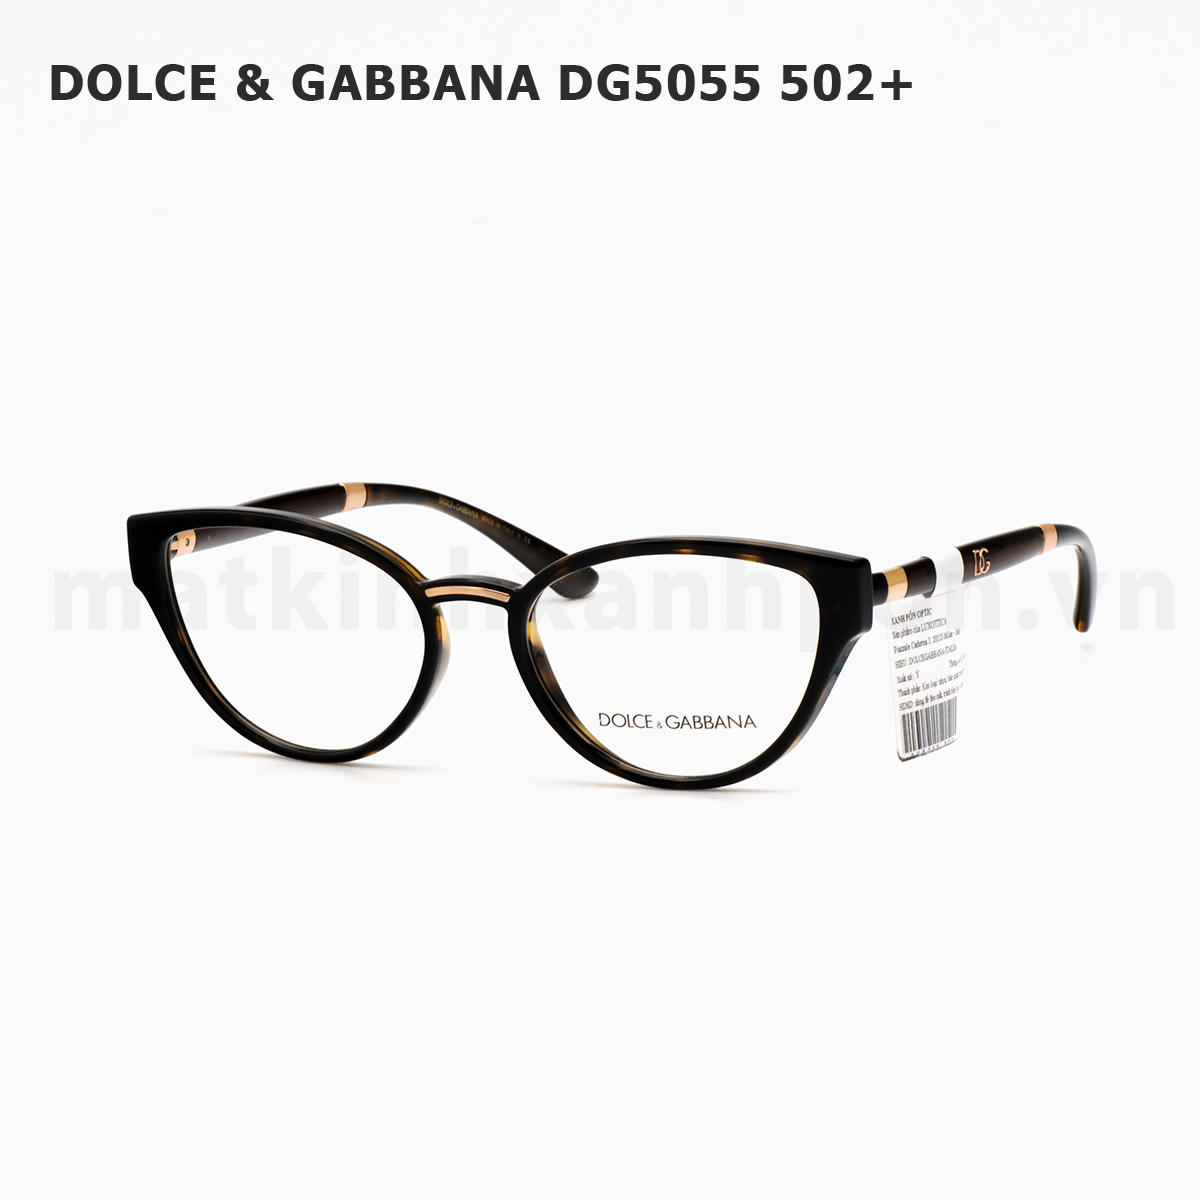 Dolce & Gabbana DG5055 502+